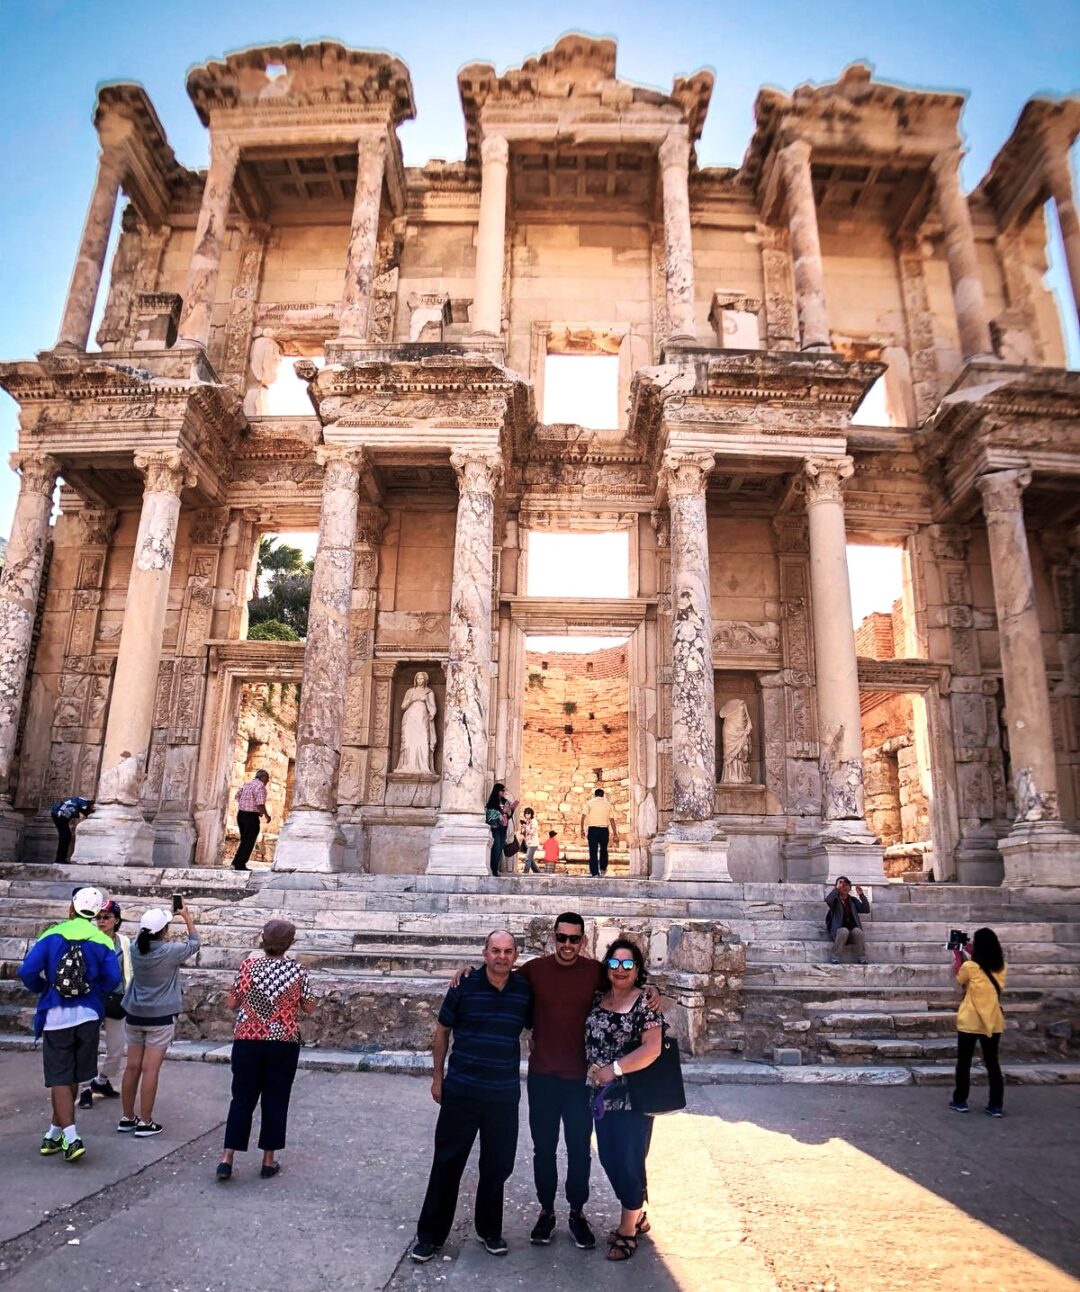 Biblioteca de Celsus